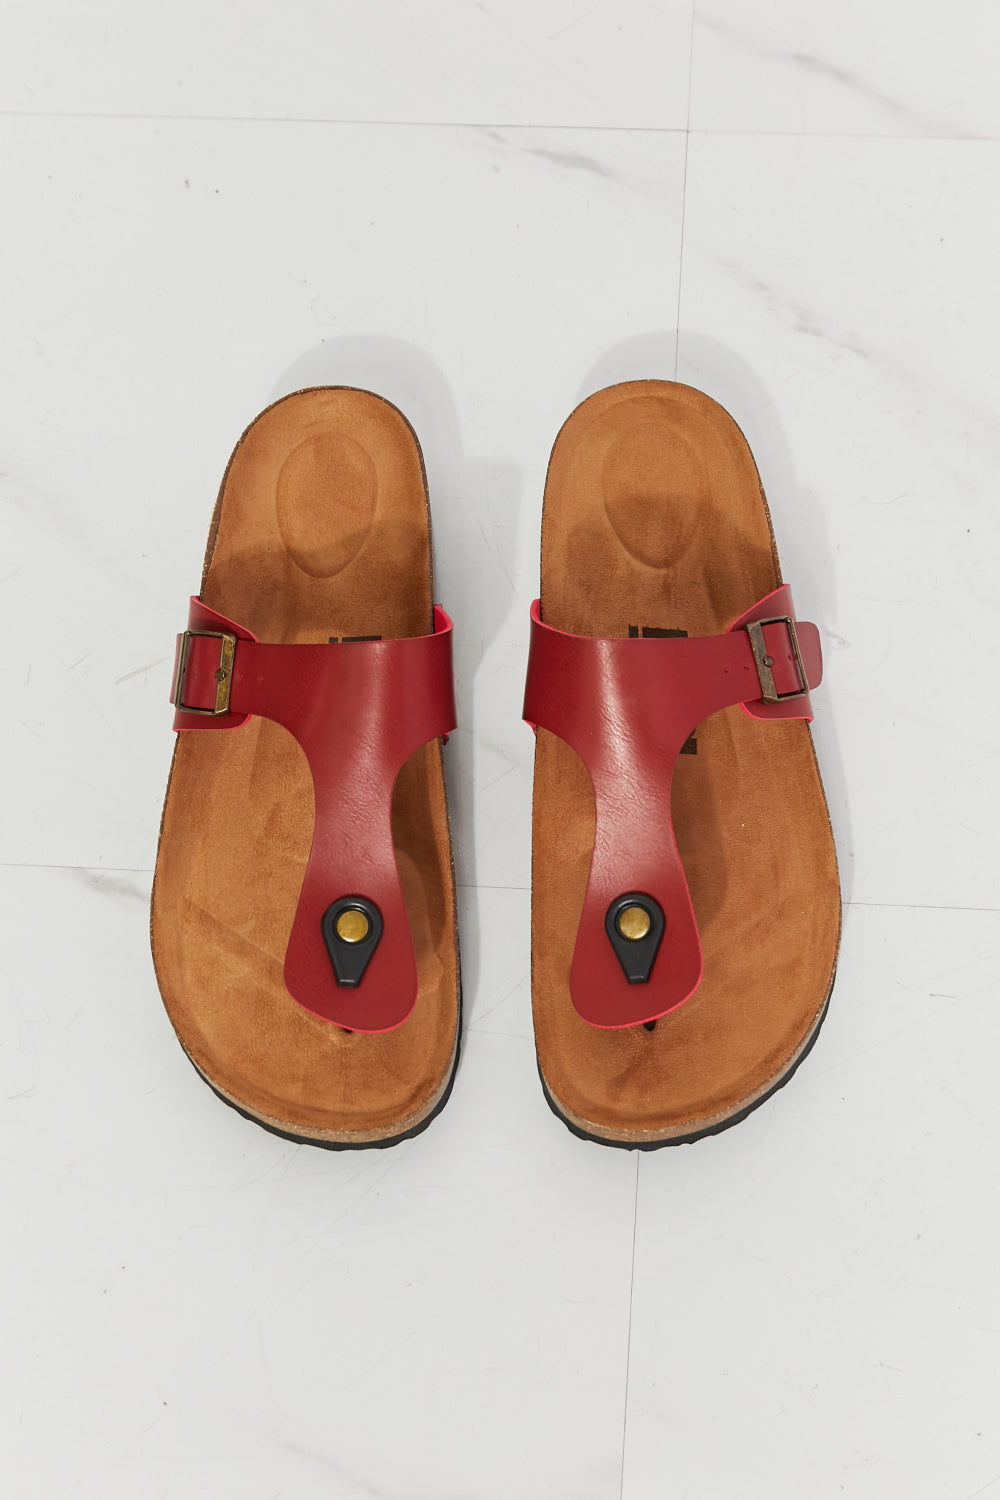 MMShoes T-Strap Flip-Flop Slide On Flat Cork Footbed Comfort Sandals in Wine Drift Away